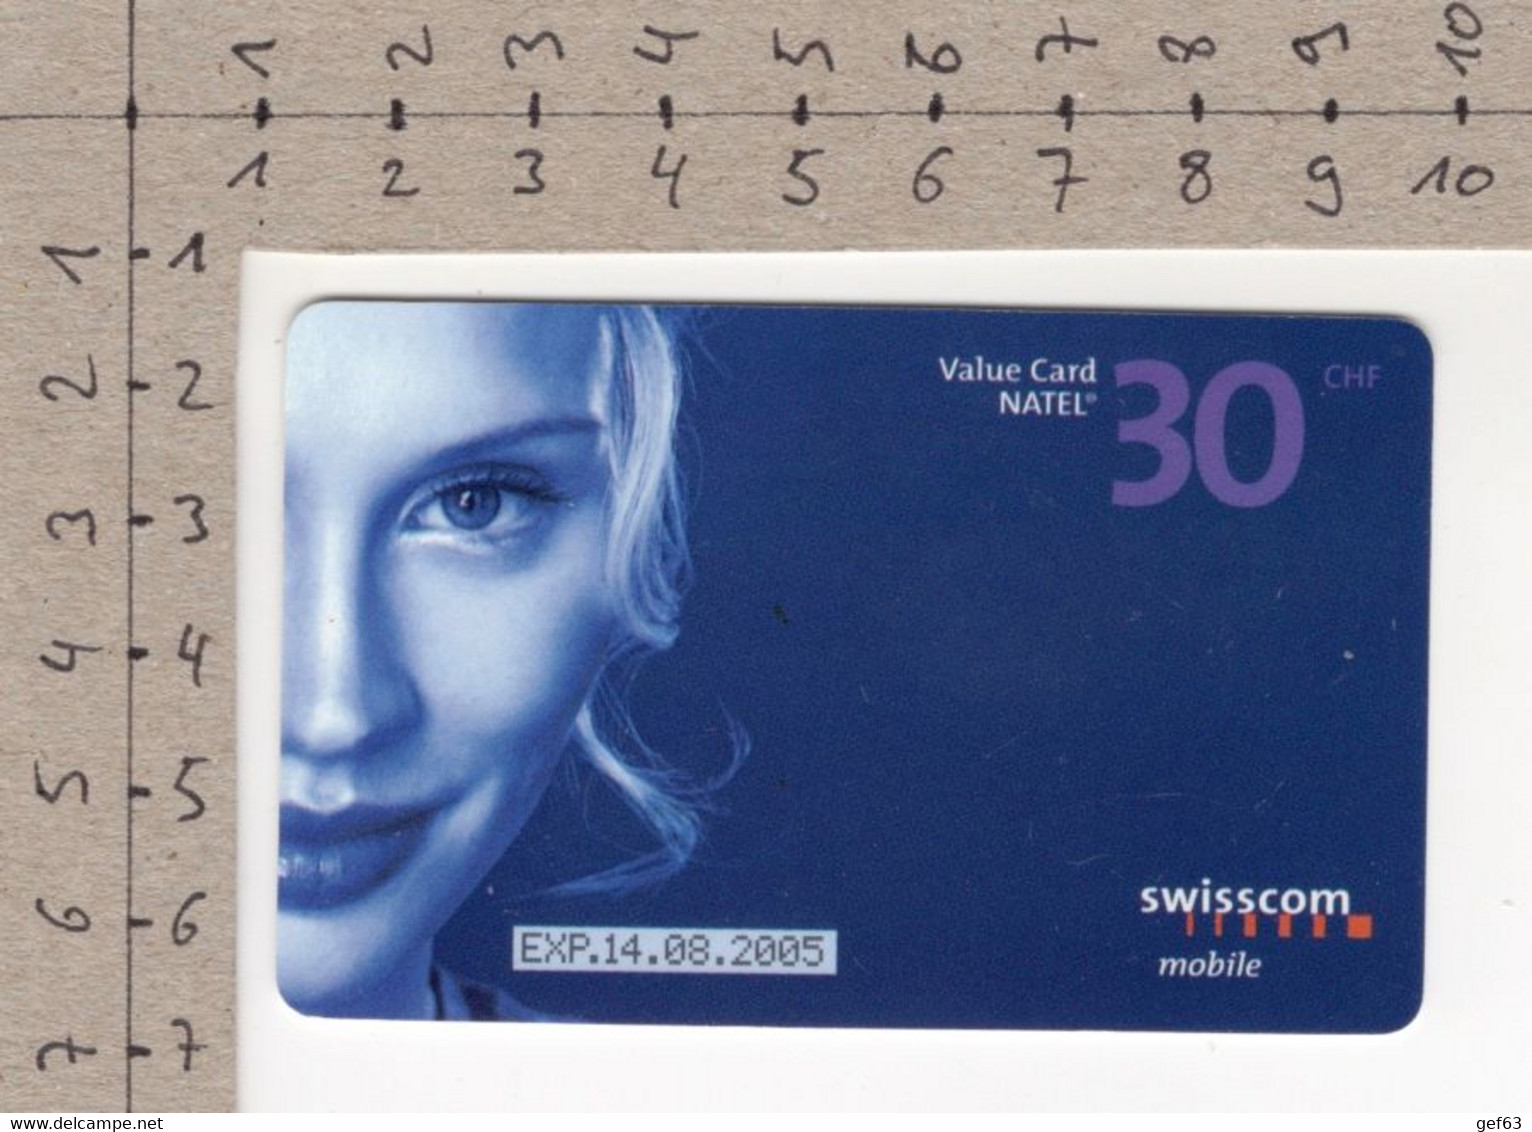 Value Card Natel Easy CHF 30.-- / SWISSCOM Mobile - Telecom